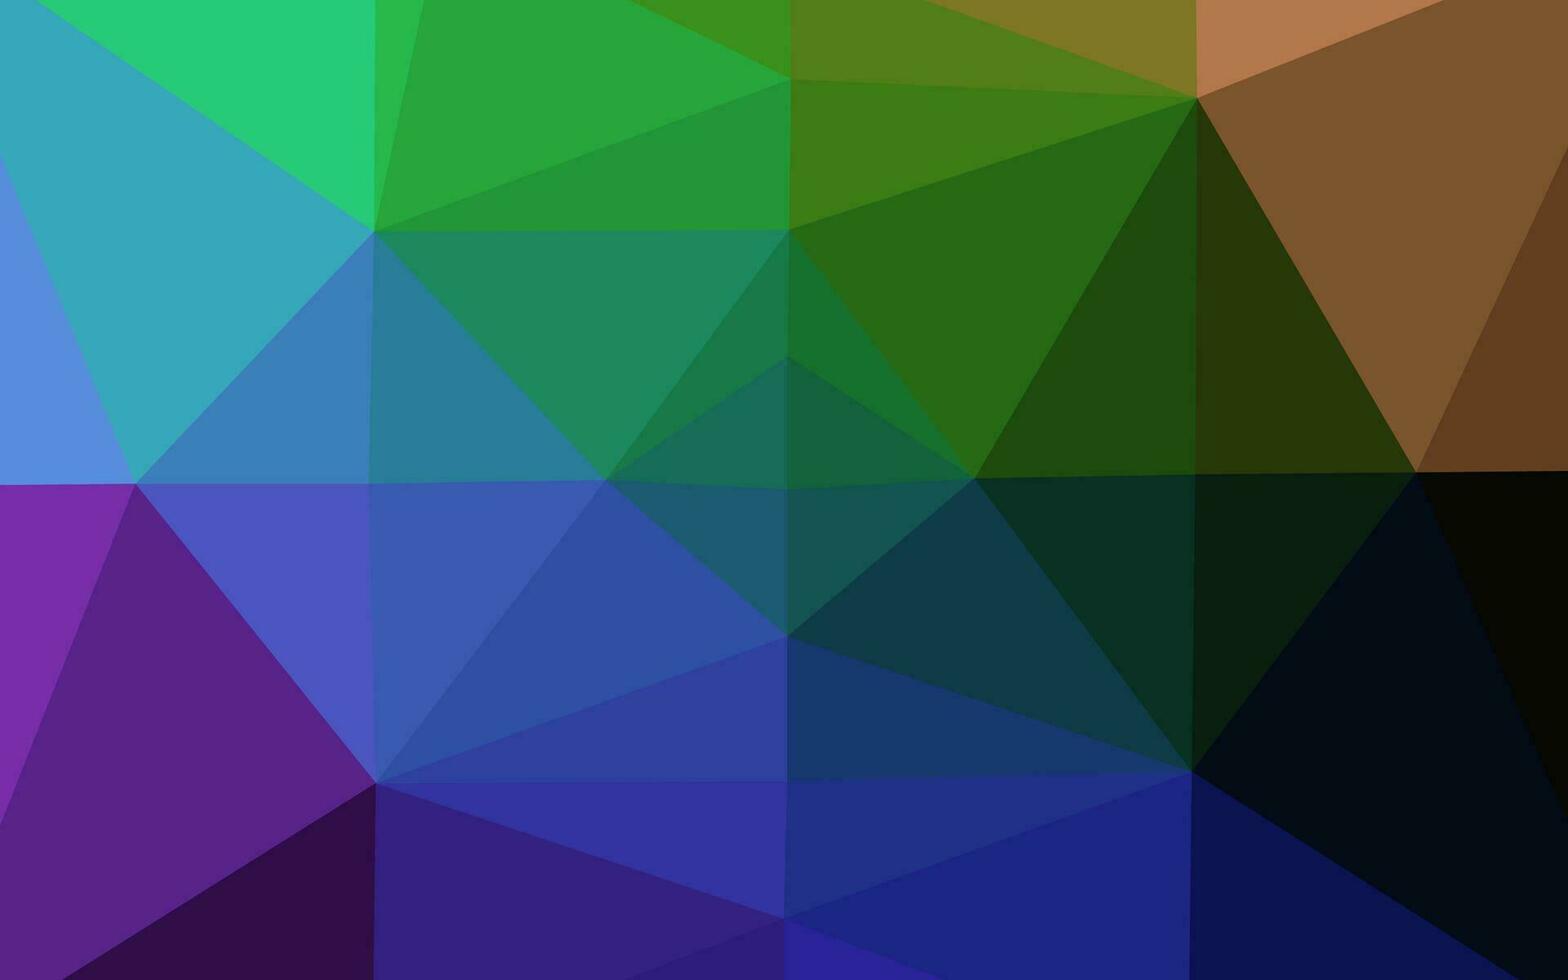 multicolor oscuro, diseño poligonal abstracto del vector del arco iris.